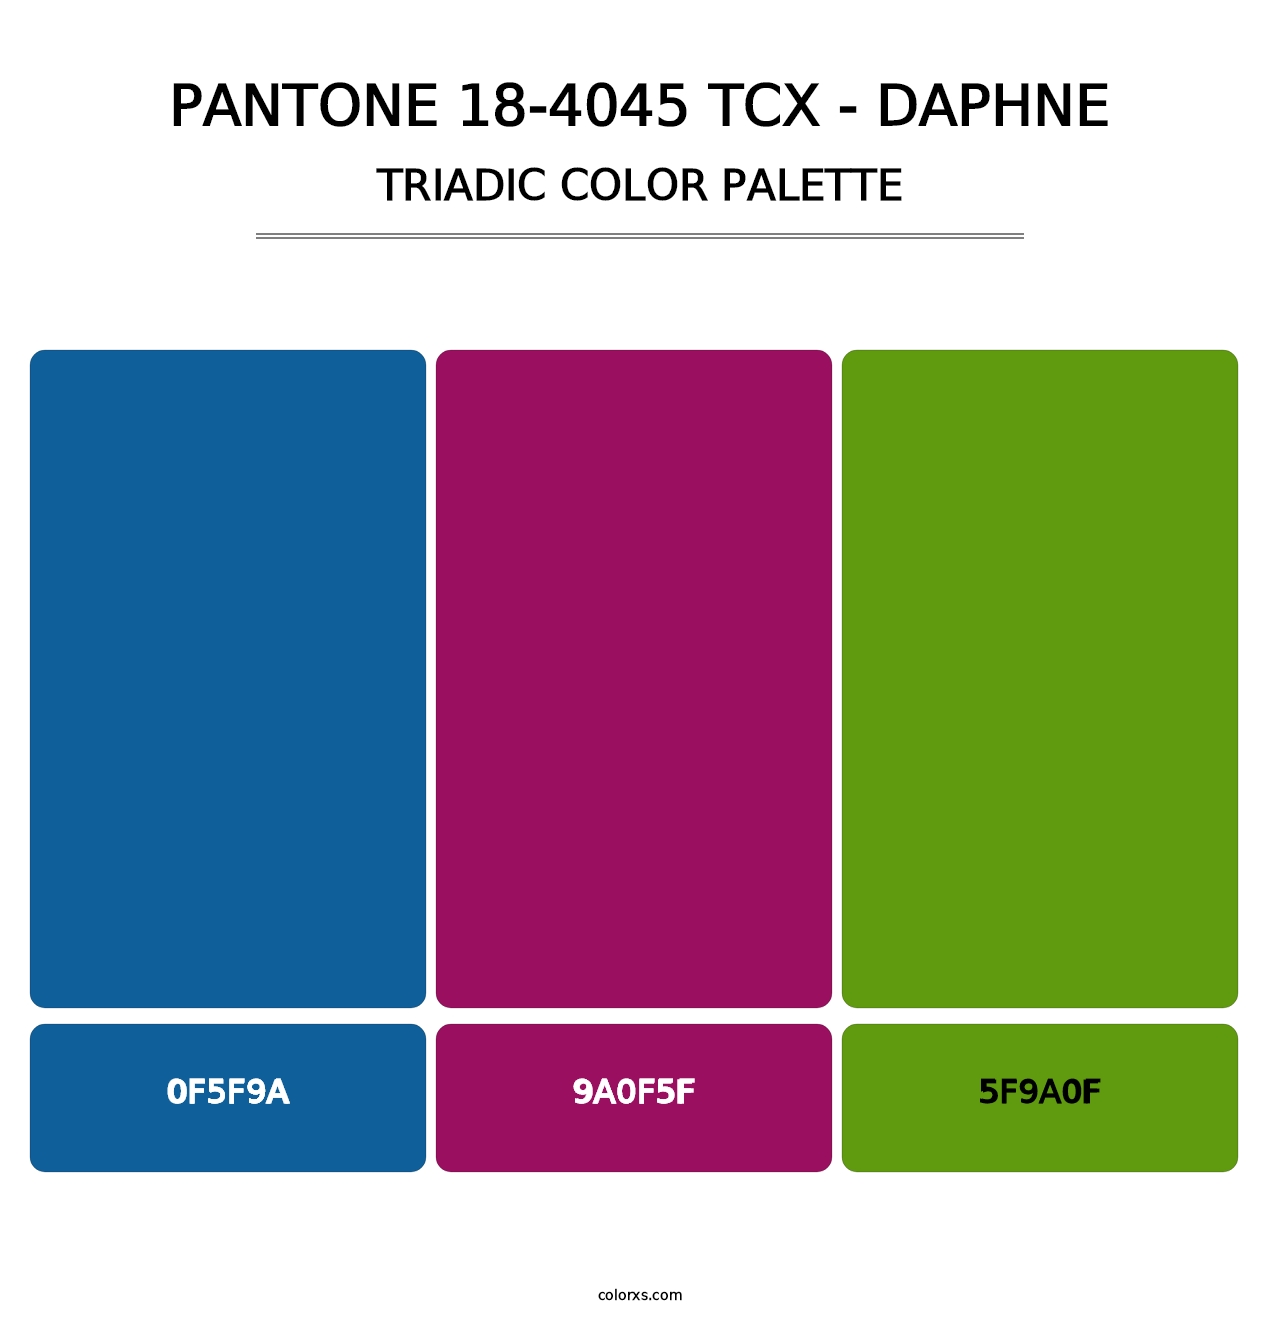 PANTONE 18-4045 TCX - Daphne - Triadic Color Palette